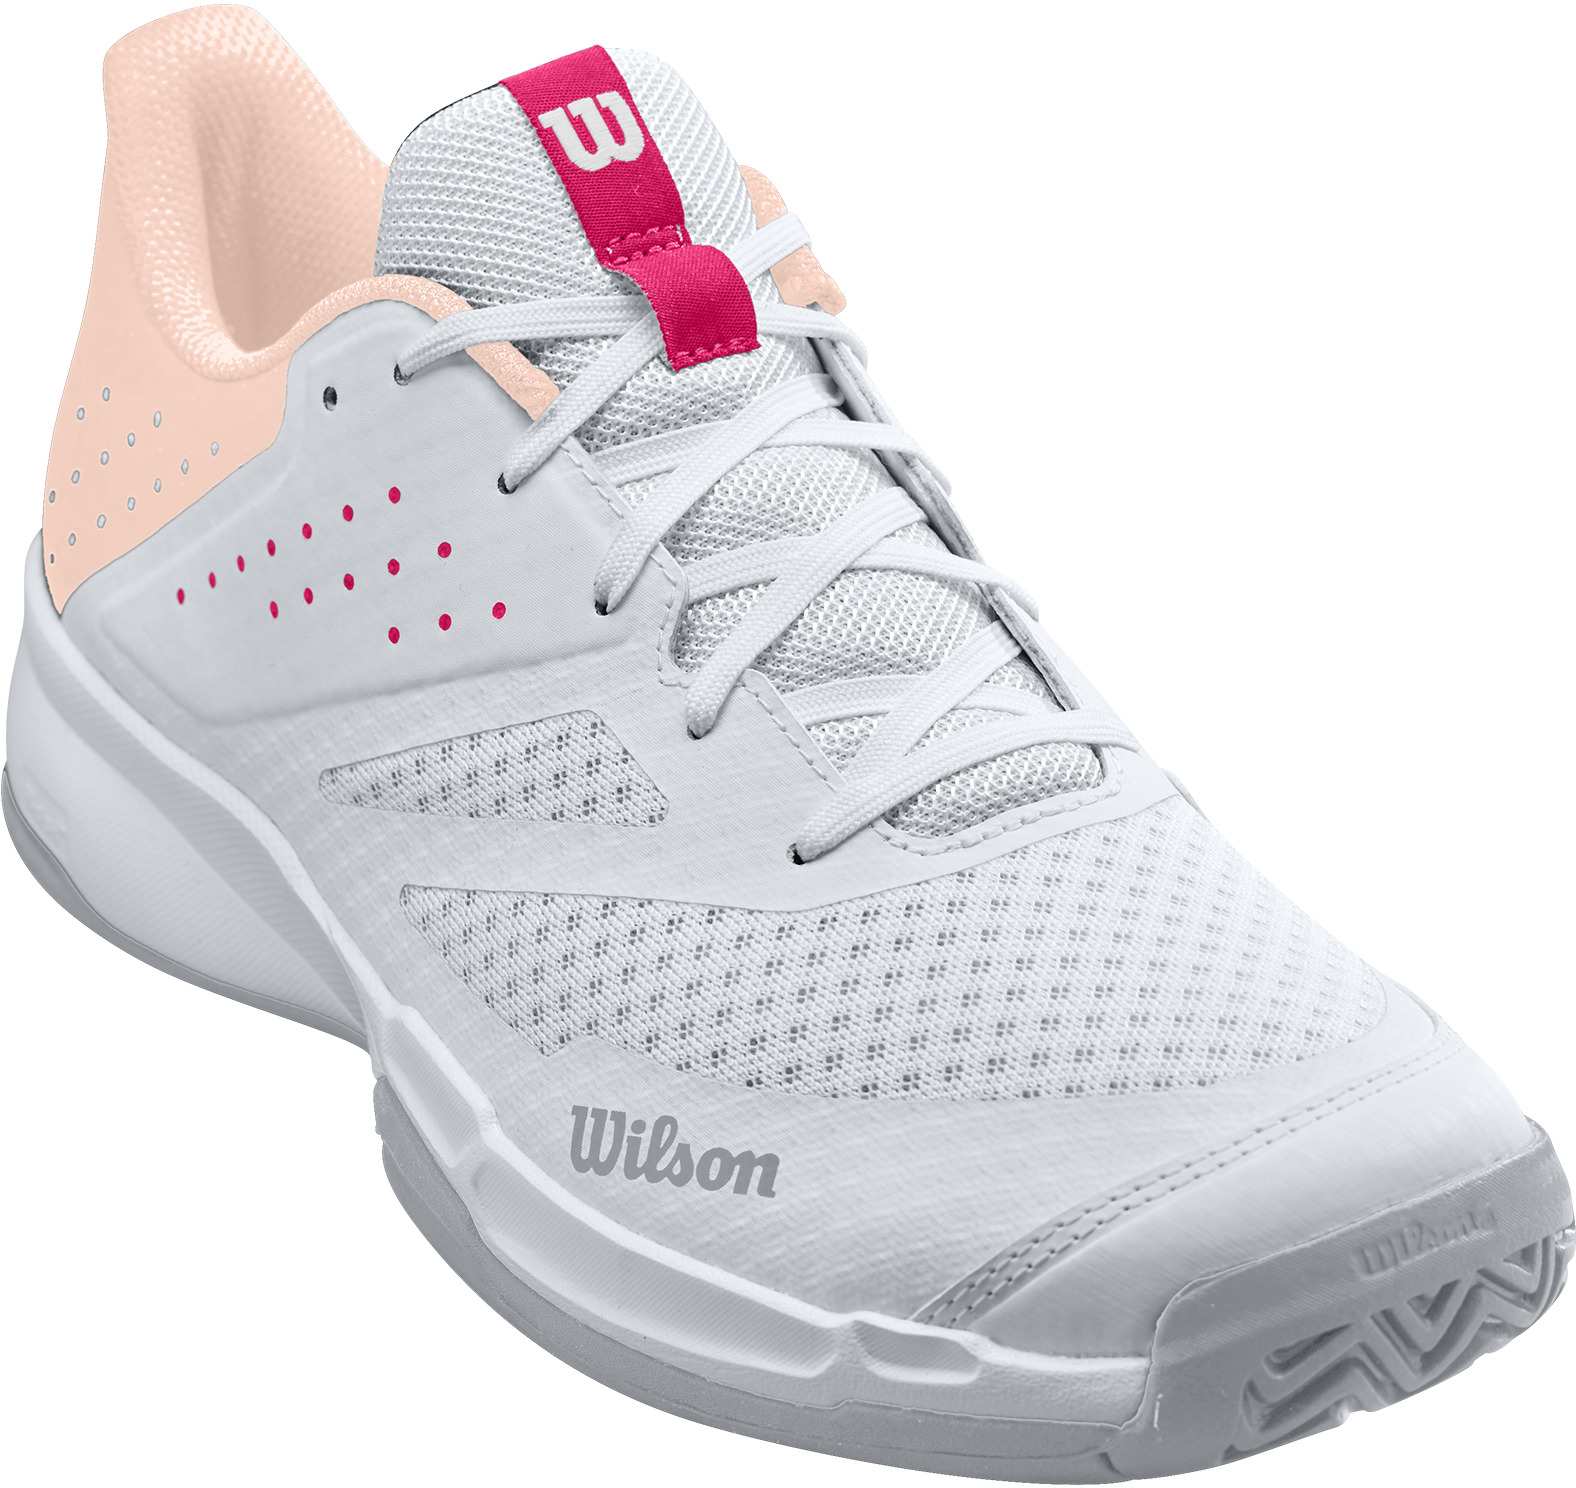 Wilson Kaos 2.0 White Womens Tennis Shoes 